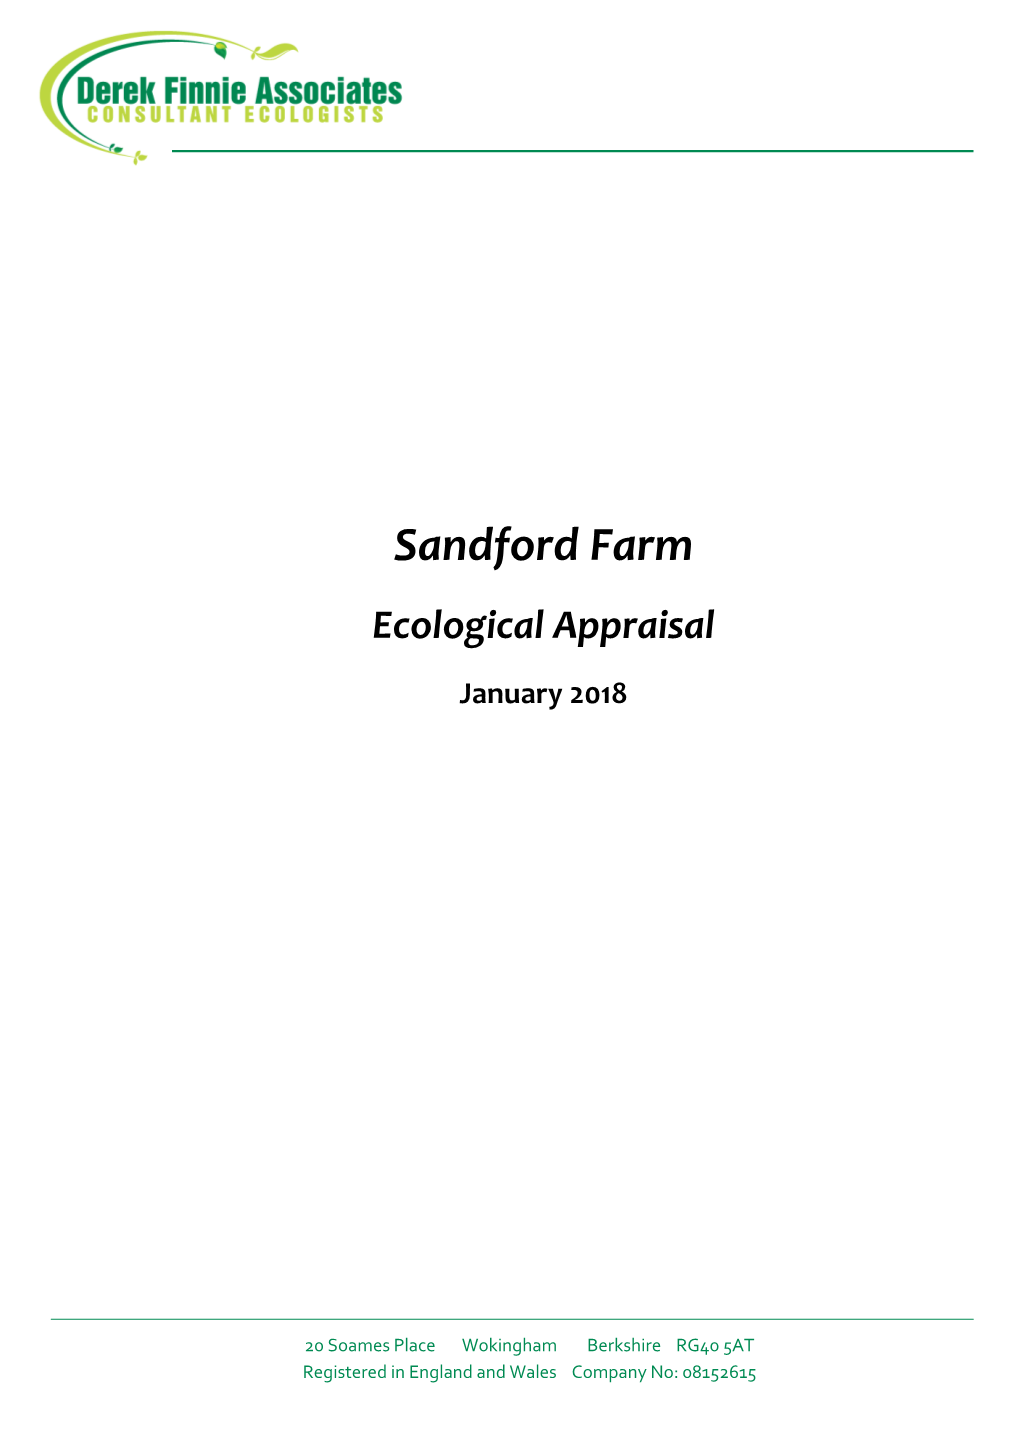 Sandford Farm Ecological Appraisal